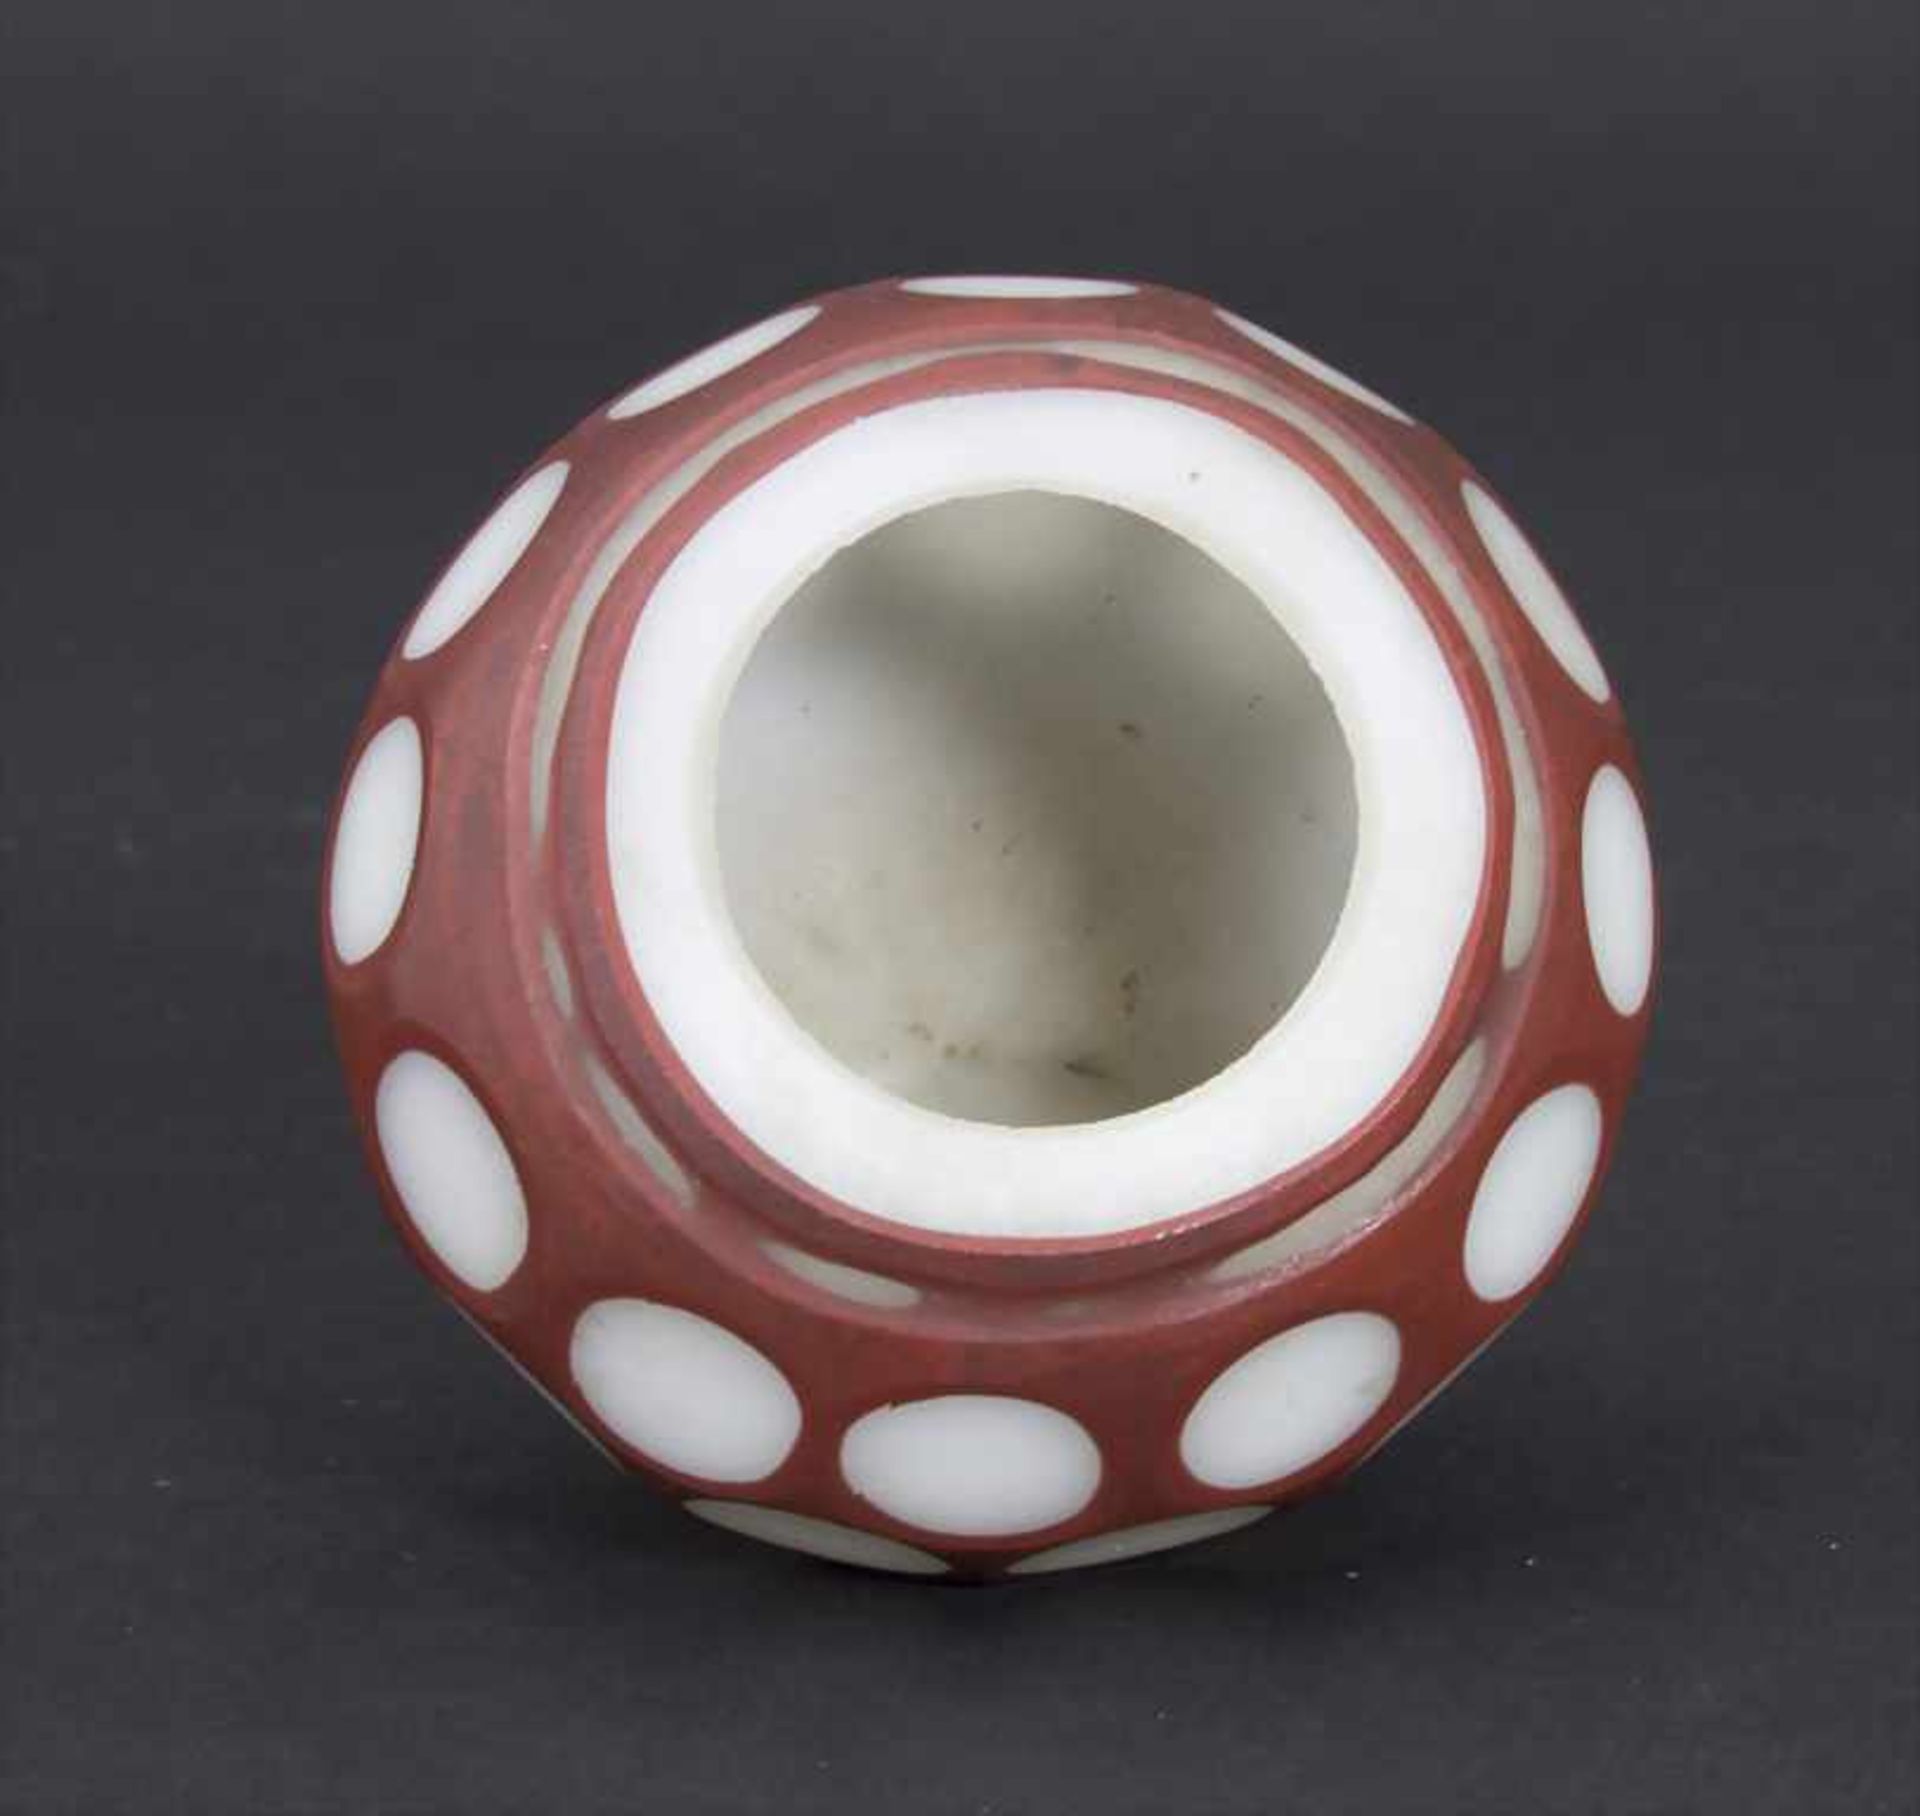 Miniatur-Ziervase, China, 18./19. Jh.Material: opakweiß und rotbraun überfangenes Glas, Wandung - Bild 2 aus 3